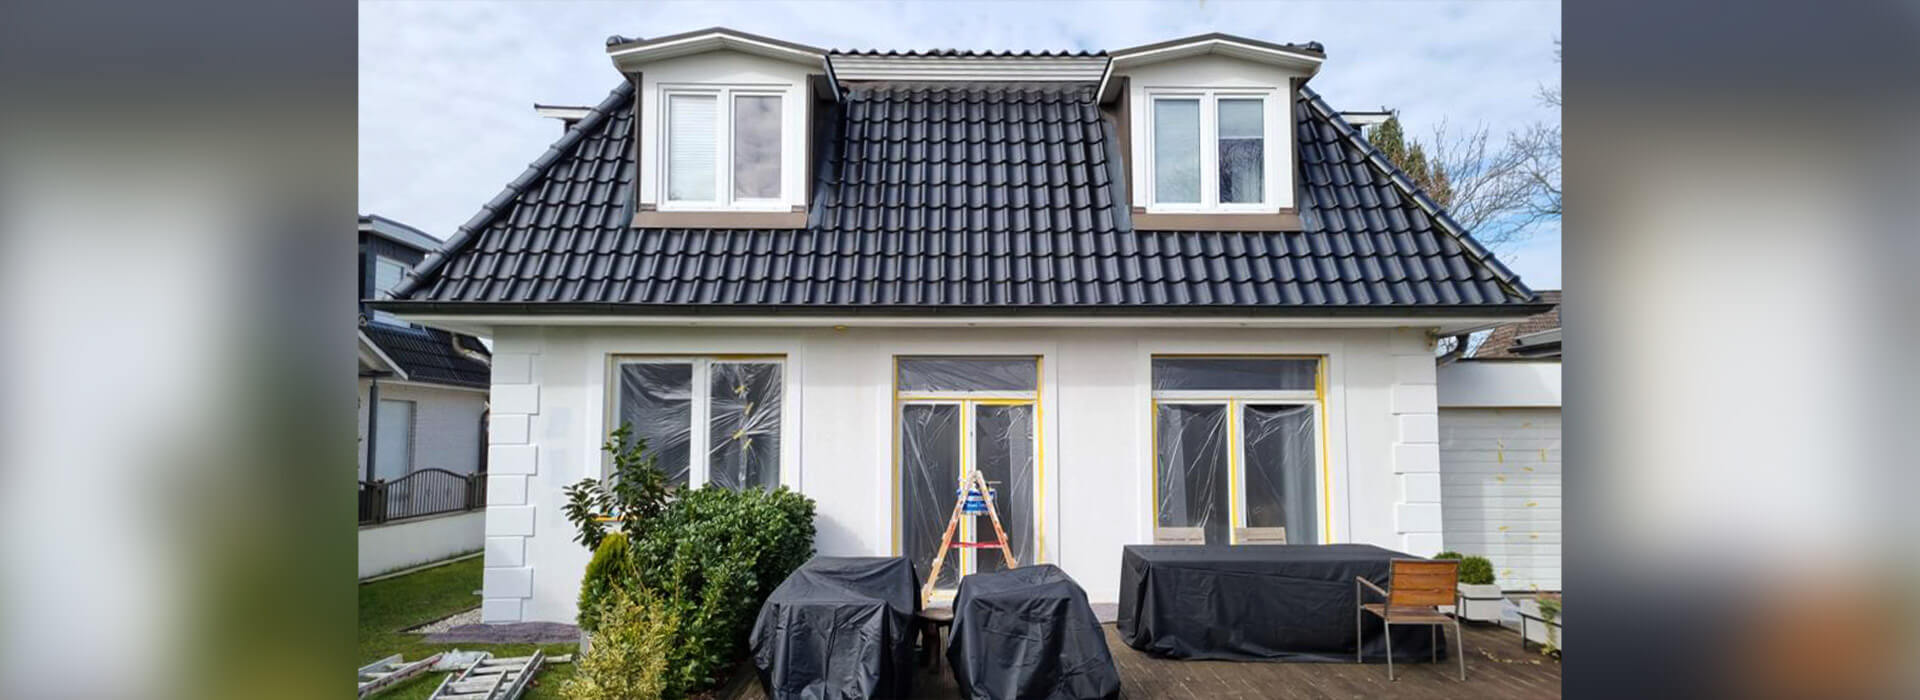 Fassadenrenovierung eines Einfamilienhauses in Hamburg